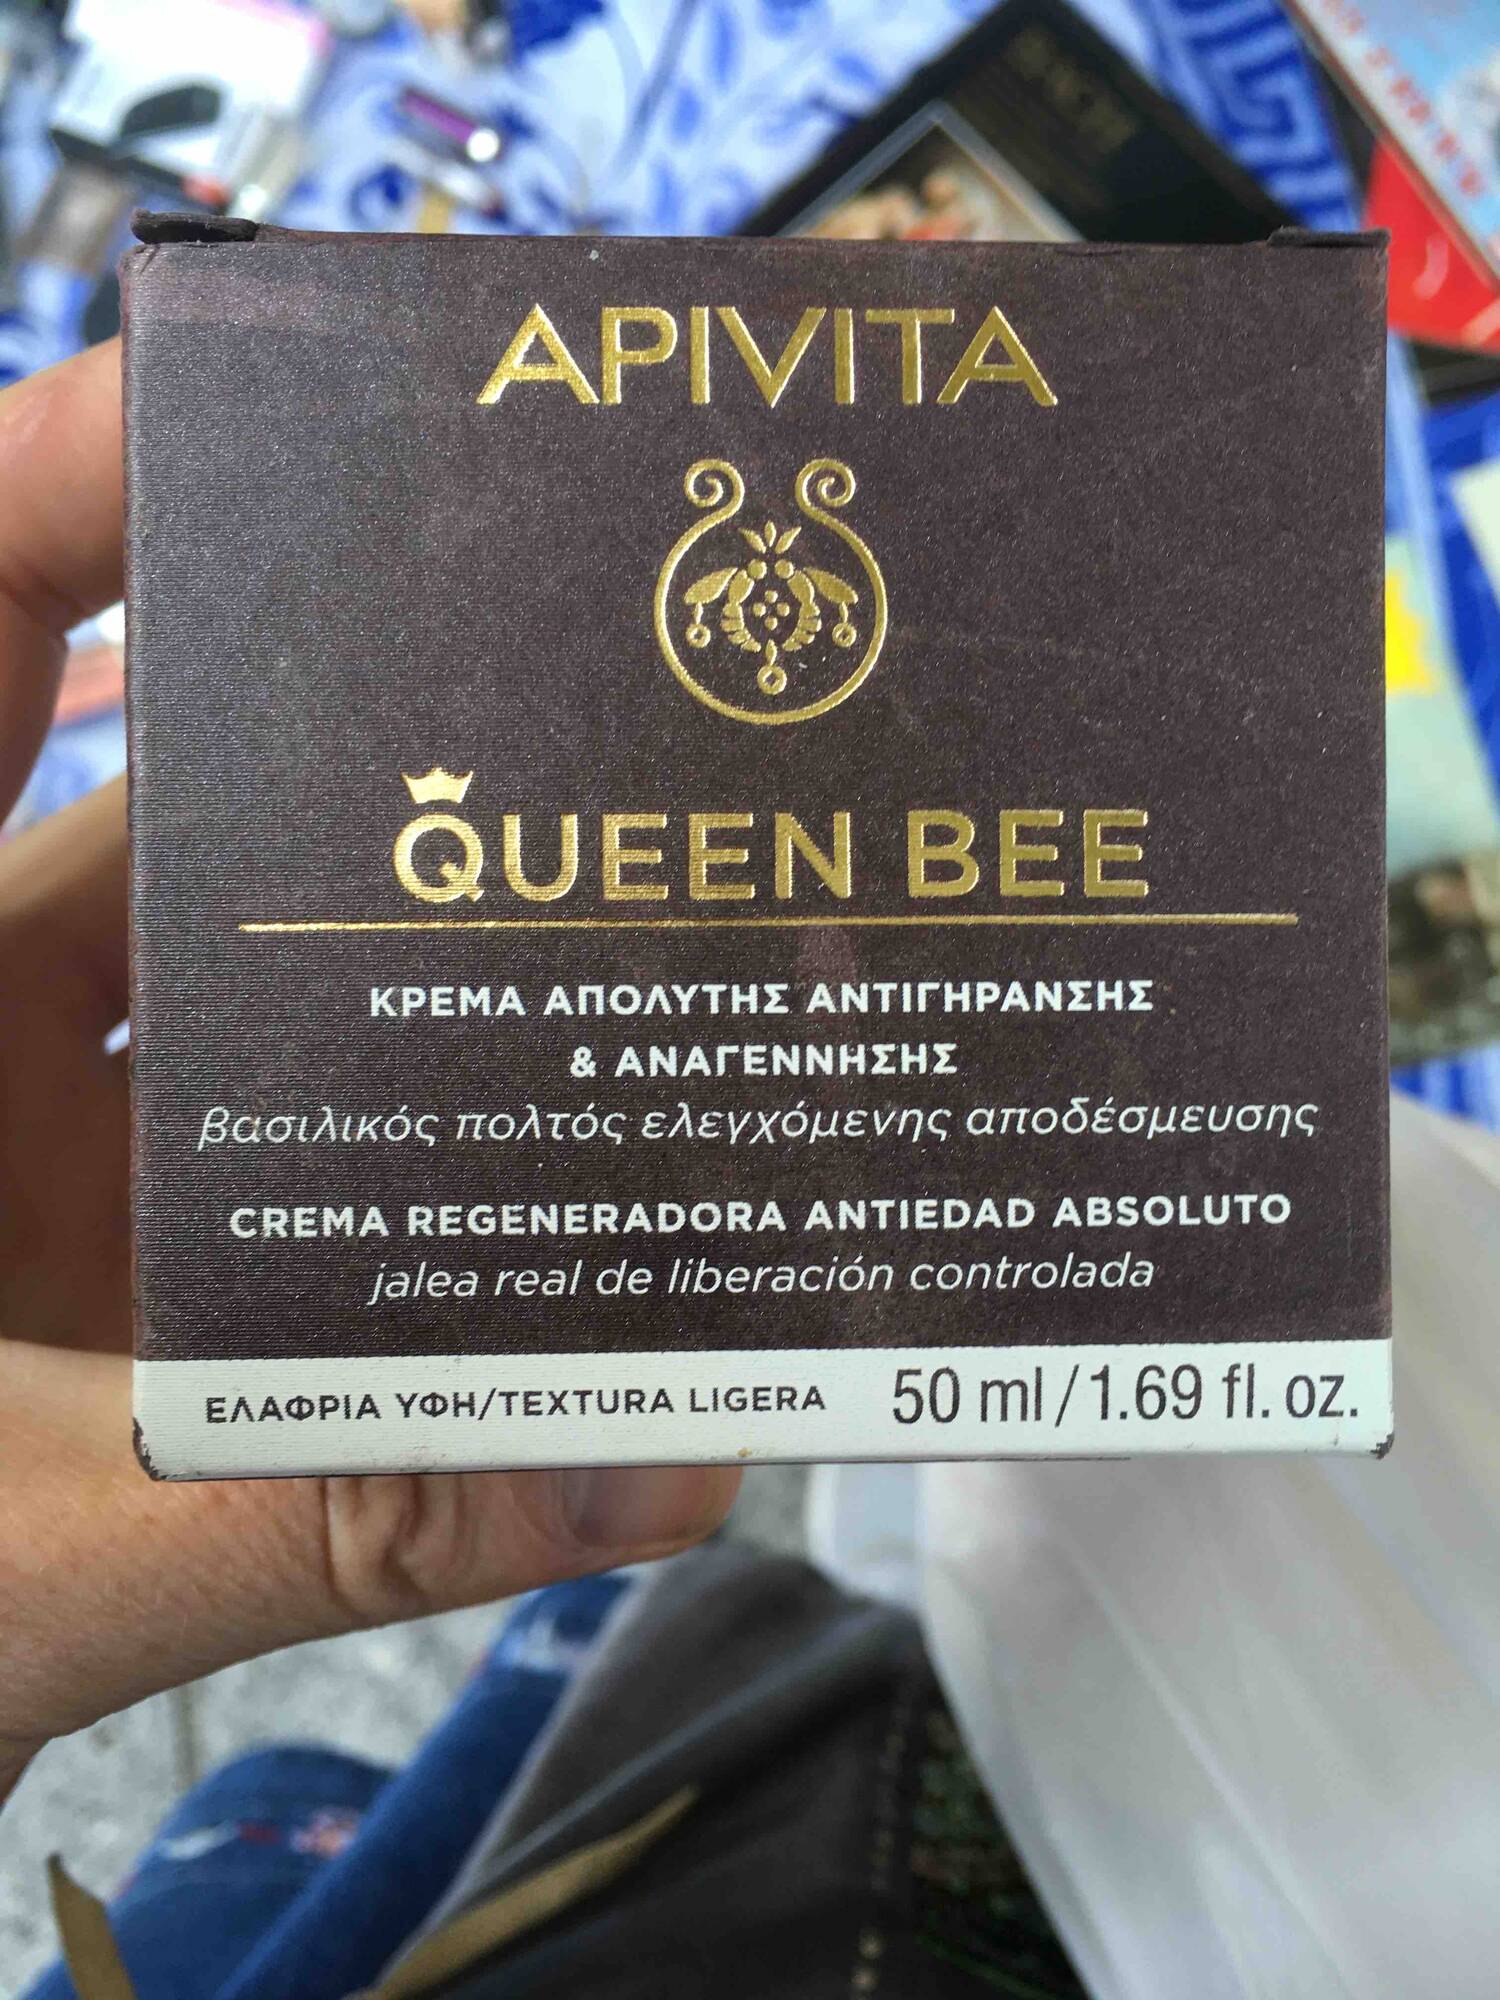 APIVITA - Queen bee - Crema regeneradora antiedad absoluto